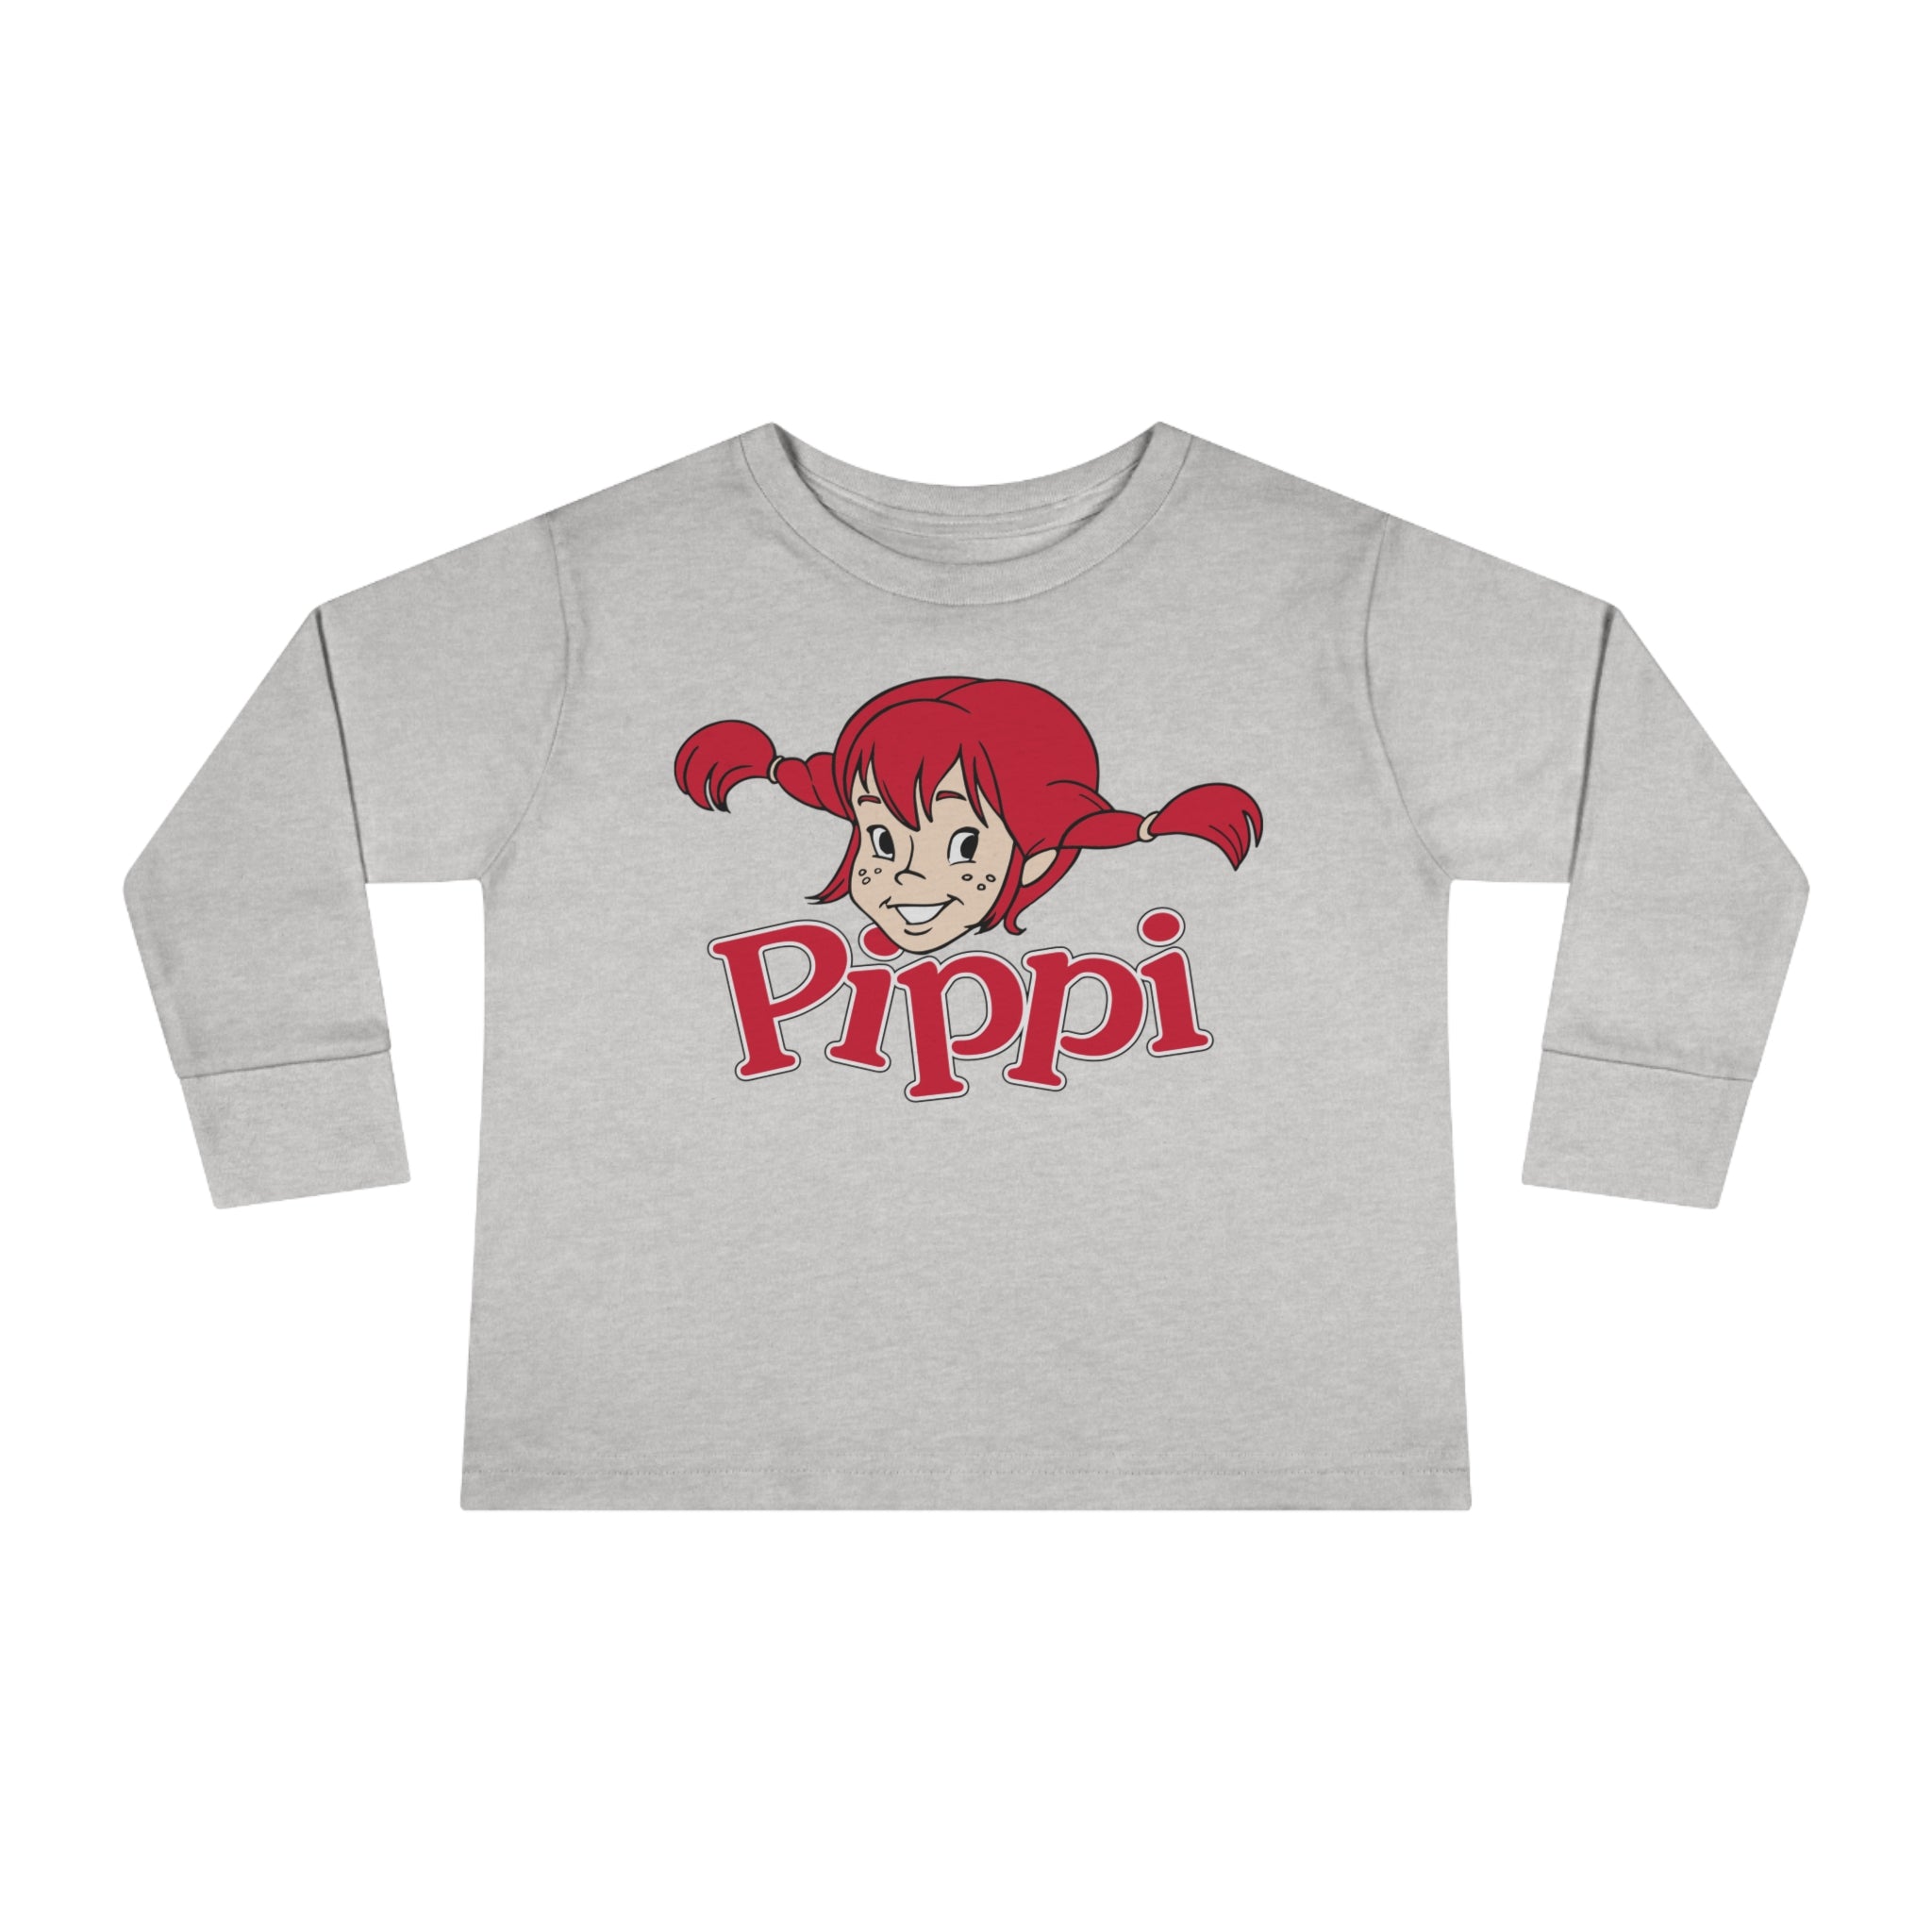 Pippi Longstocking Toddler Long Sleeve Tee